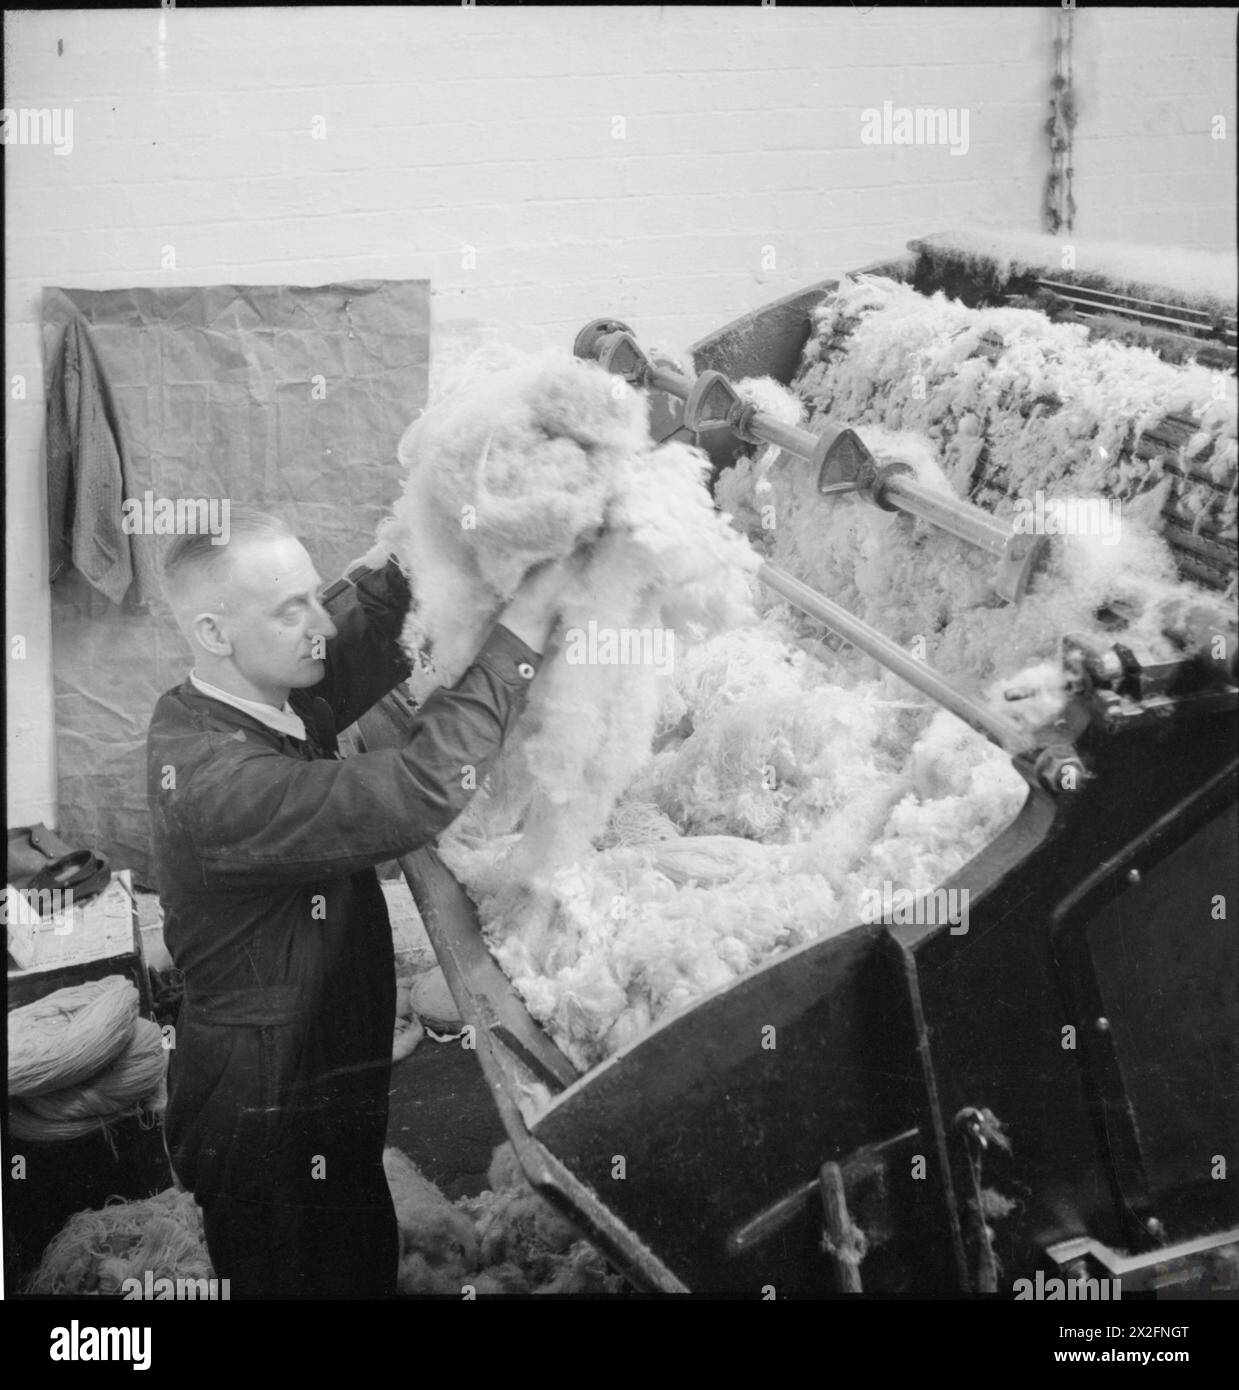 ALTE LAPPEN IN NEUES TUCH: BERGUNG IN GROSSBRITANNIEN, APRIL 1942 - Stapel der flauschigen Wolle und der schlammigen Mischung werden in die Kardiermaschine dieser Textilfabrik irgendwo in Großbritannien eingespeist Stockfoto